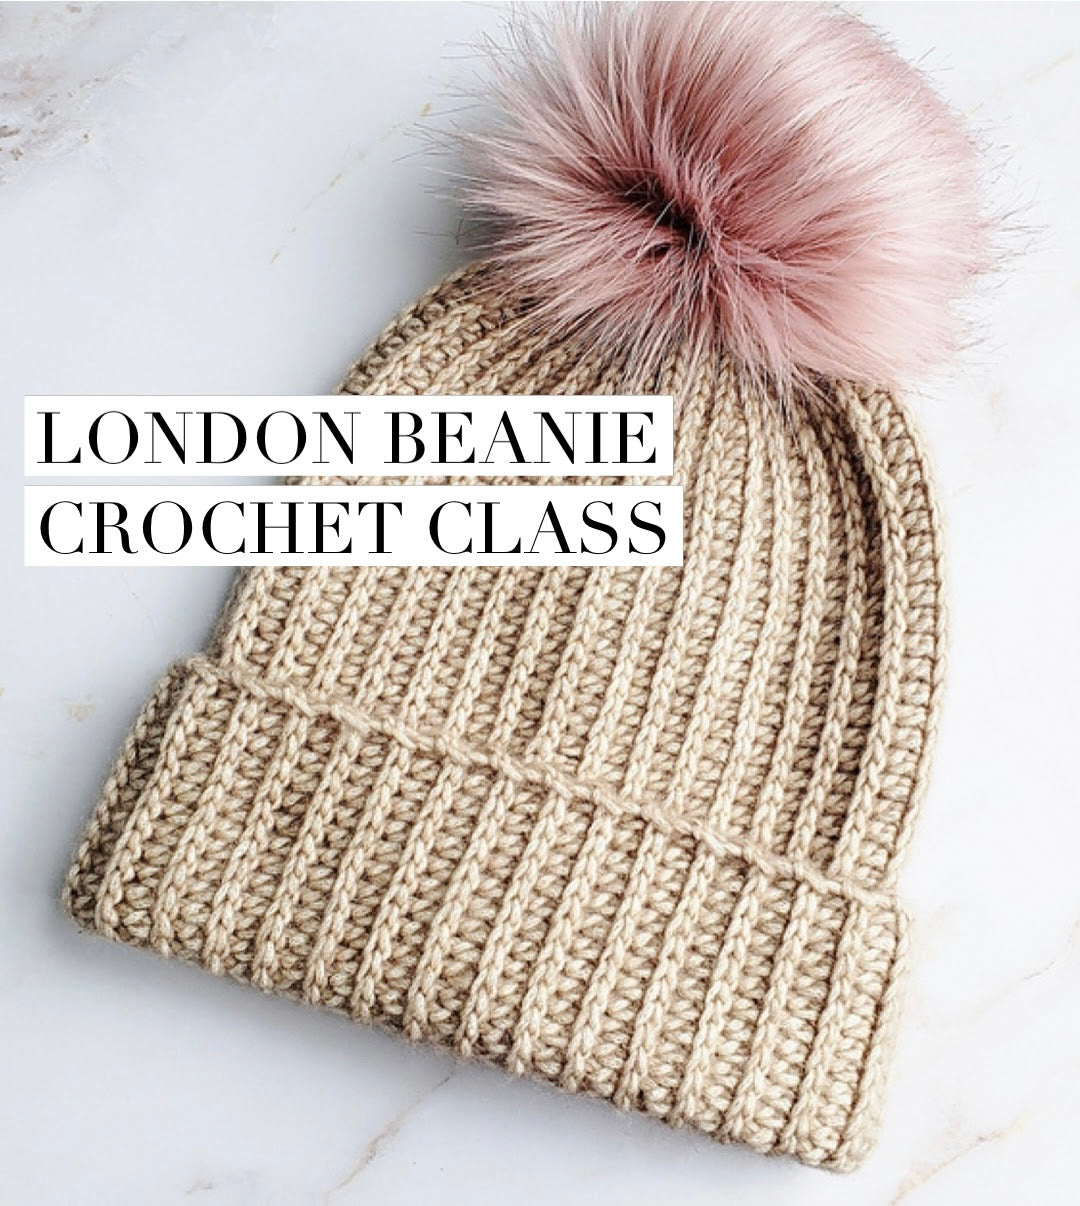 London Beanie Crochet Class